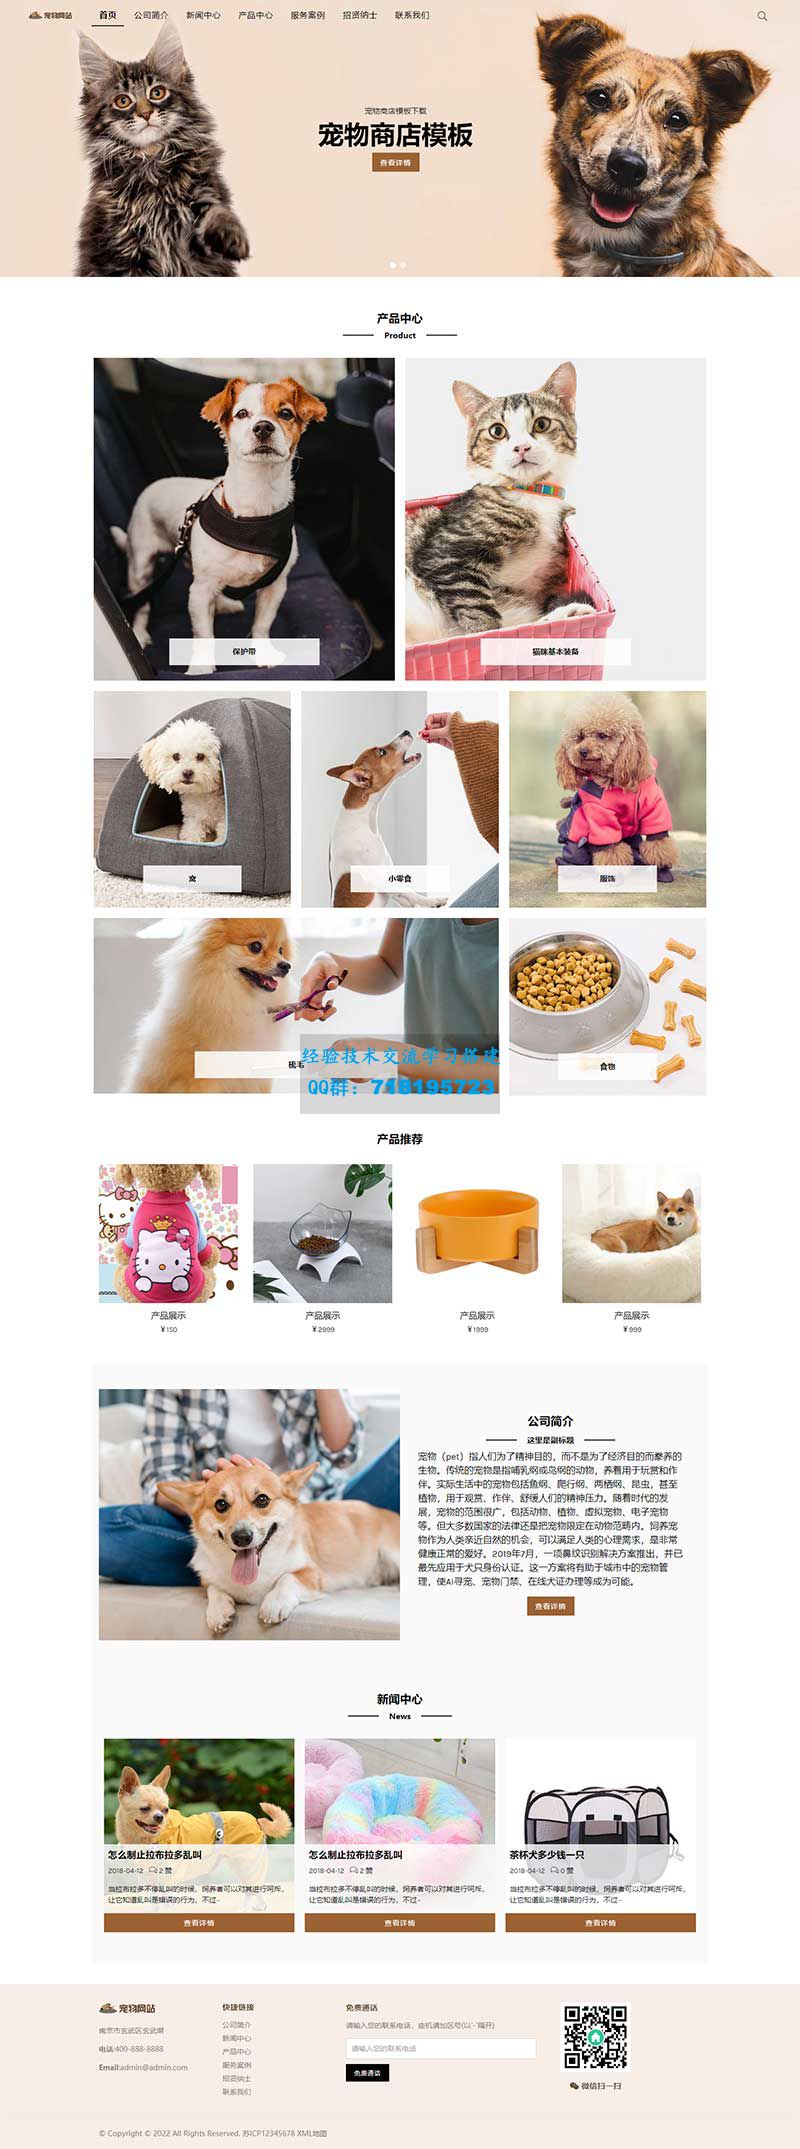     宠物商店宠物网站源码 宠物装备类网站pbootcms模板
